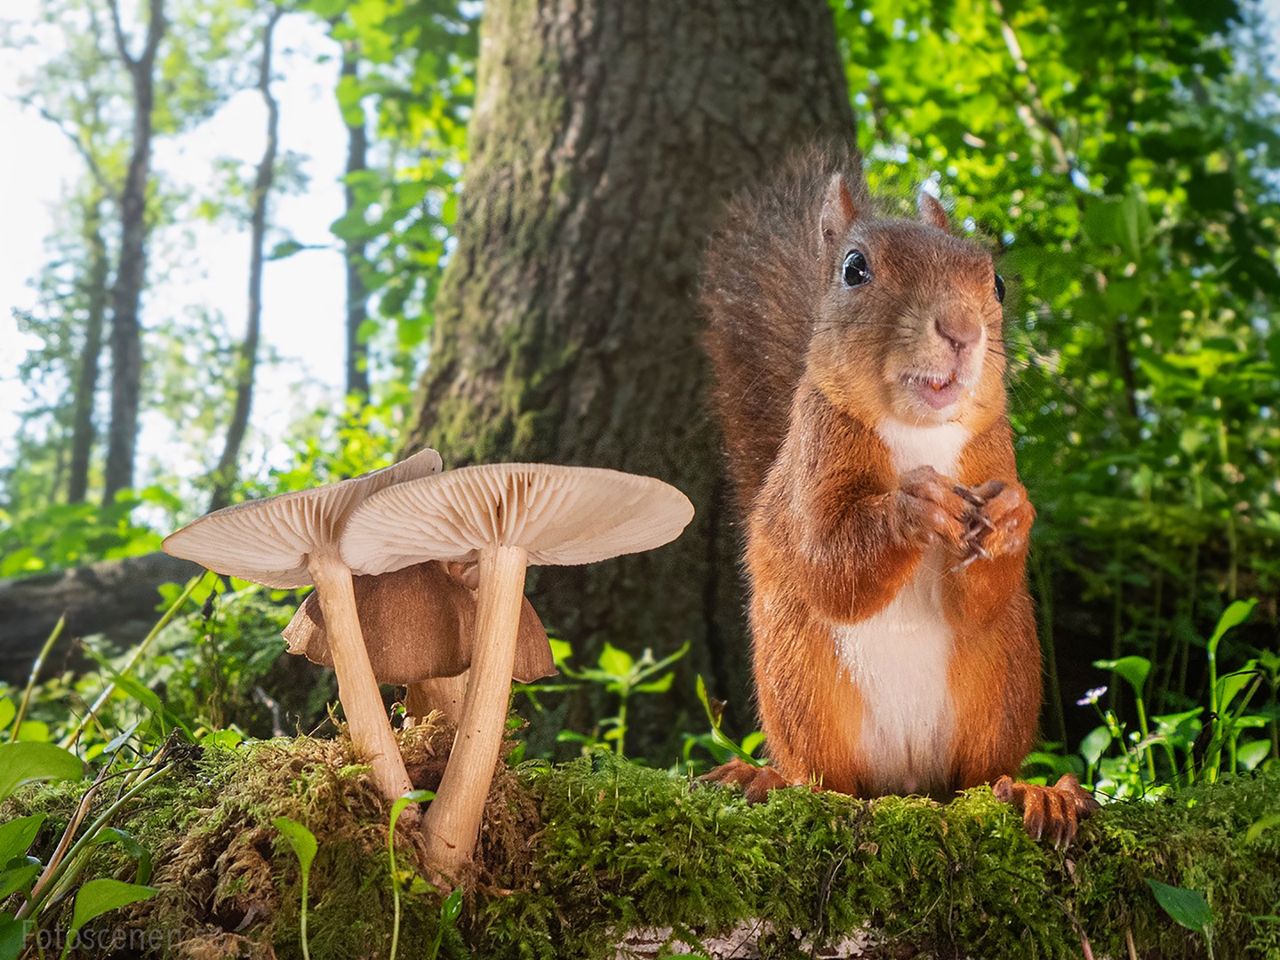 Fotograf robi zdjęcia wiewiórek, by poprawić humor innym